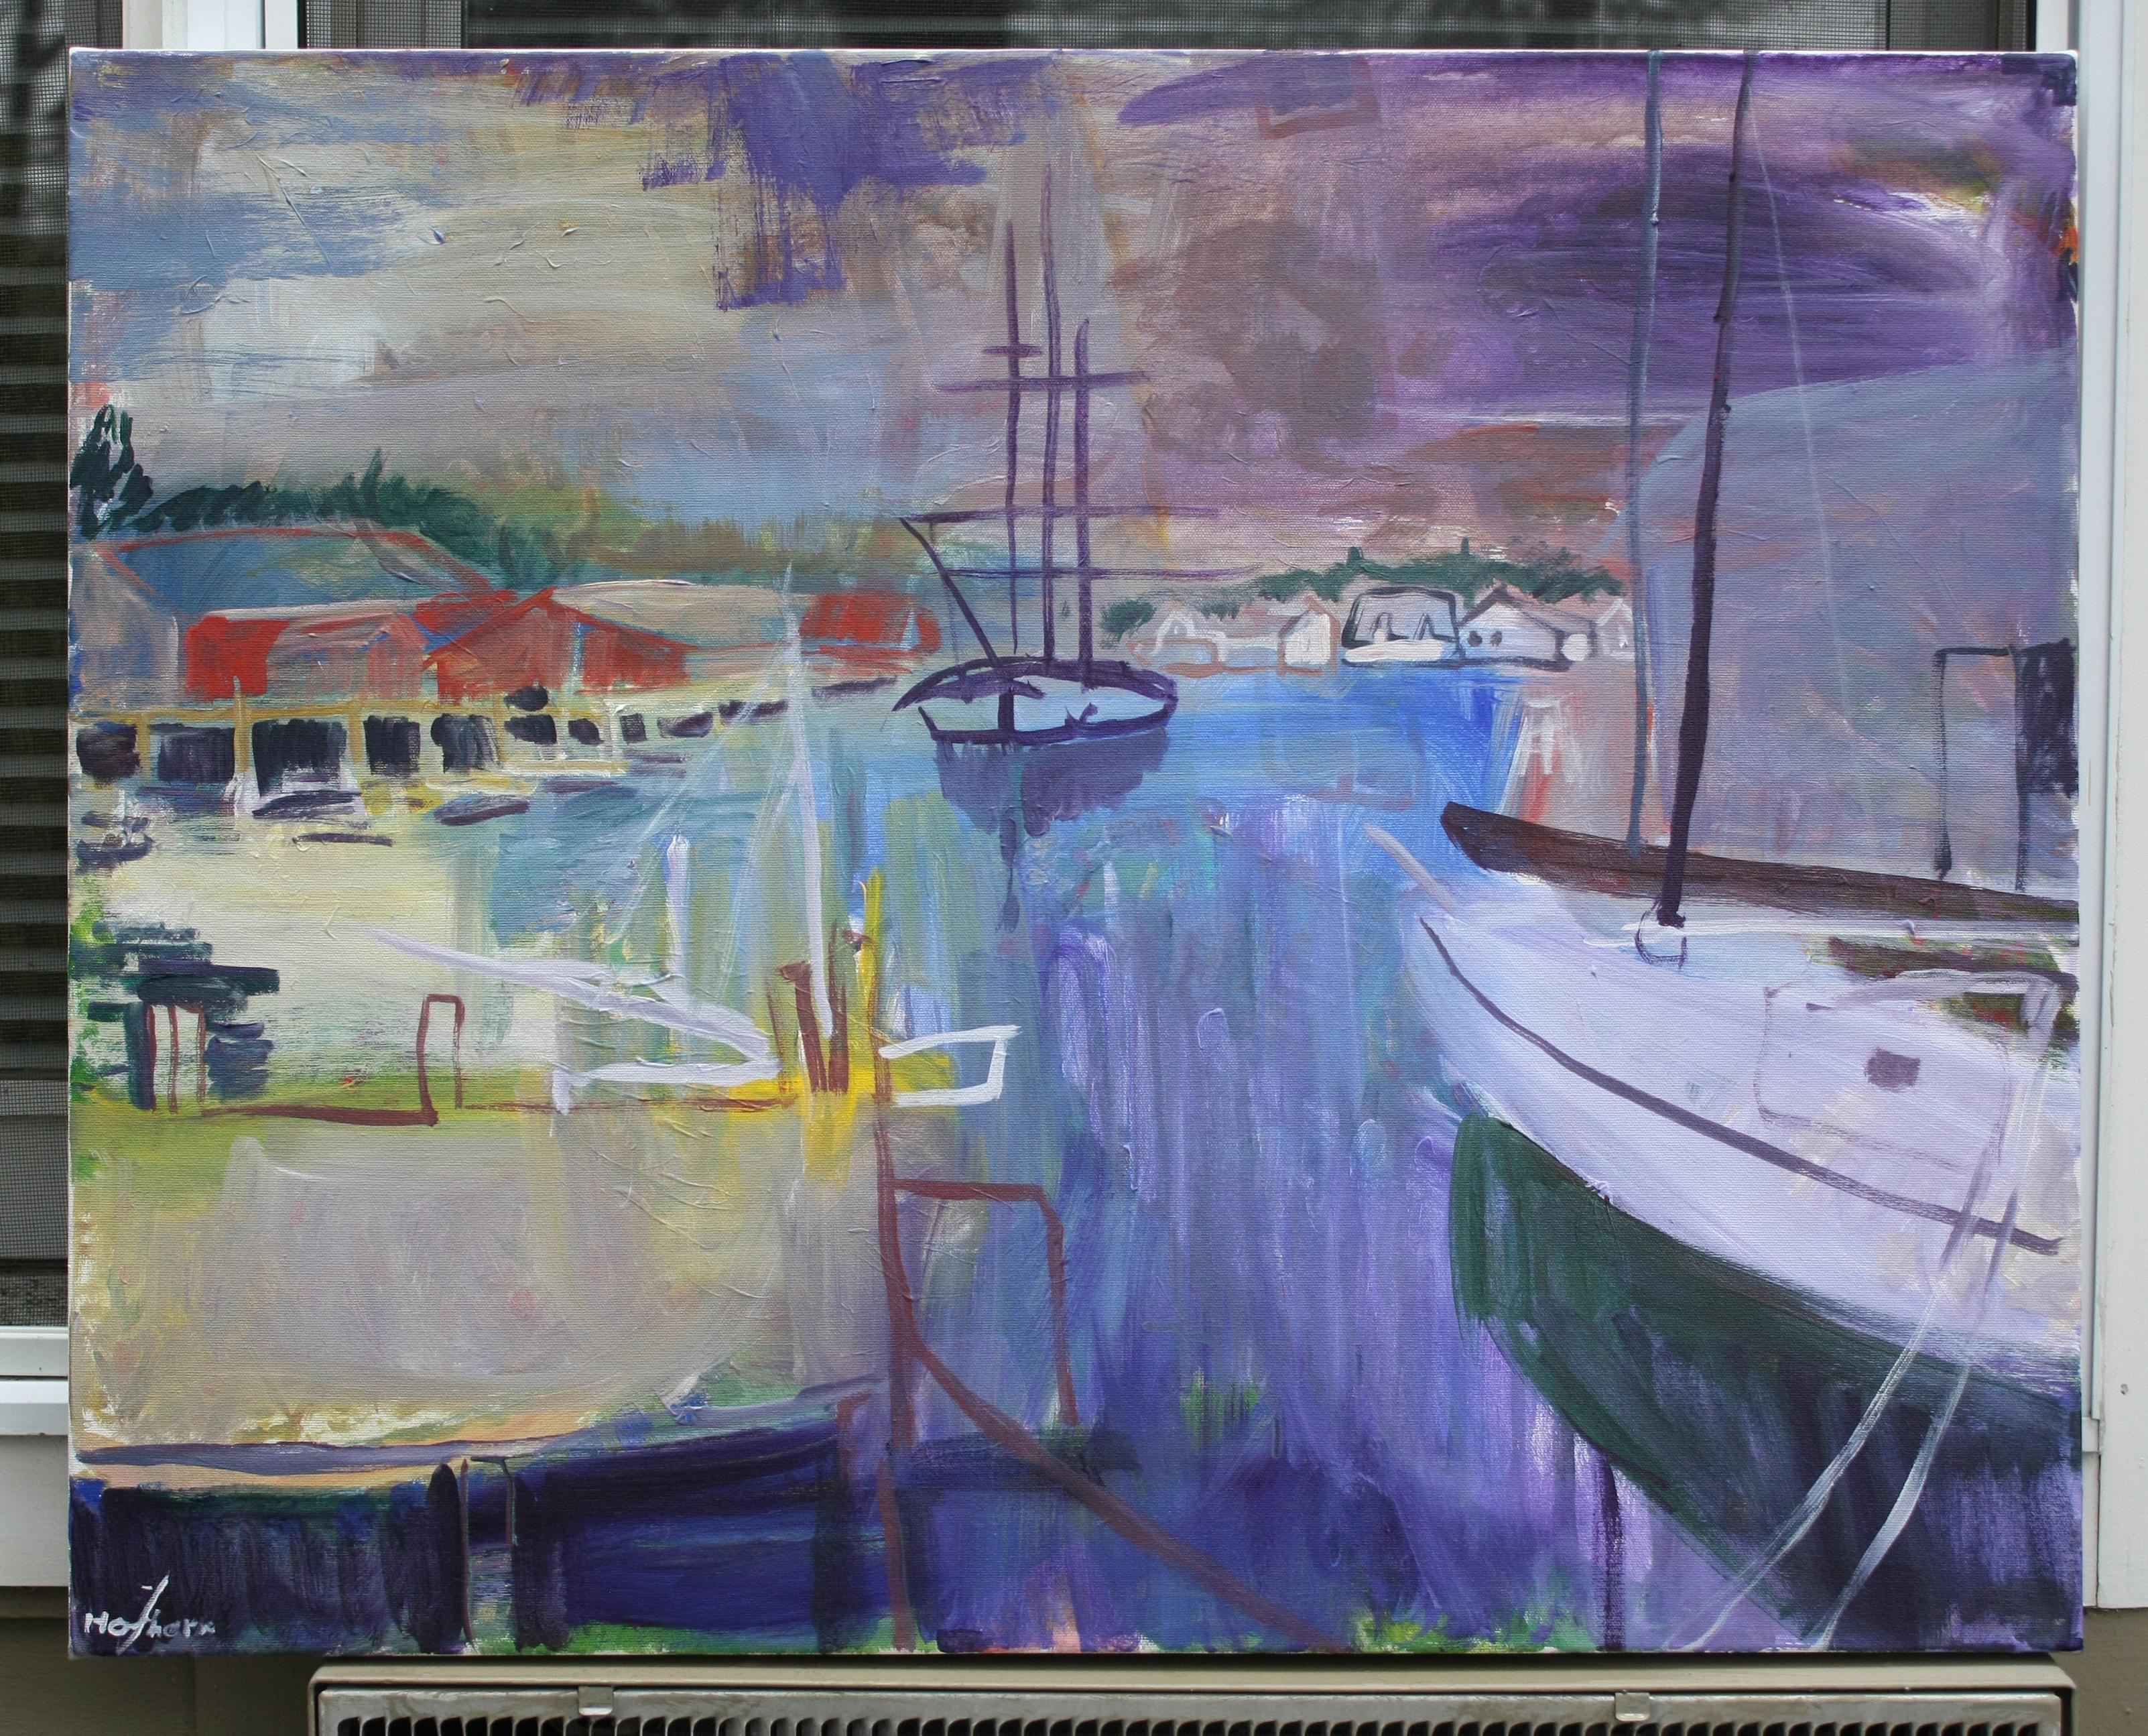 <p>Kommentare des Künstlers<br>Eine Hafenstadt in Neuengland verwandelt sich durch ungewöhnliche Farben, ausdrucksstarke Striche und minimale Details in eine stilisierte Meereslandschaft. Ein Segelboot schippert über das Wasser, während das andere